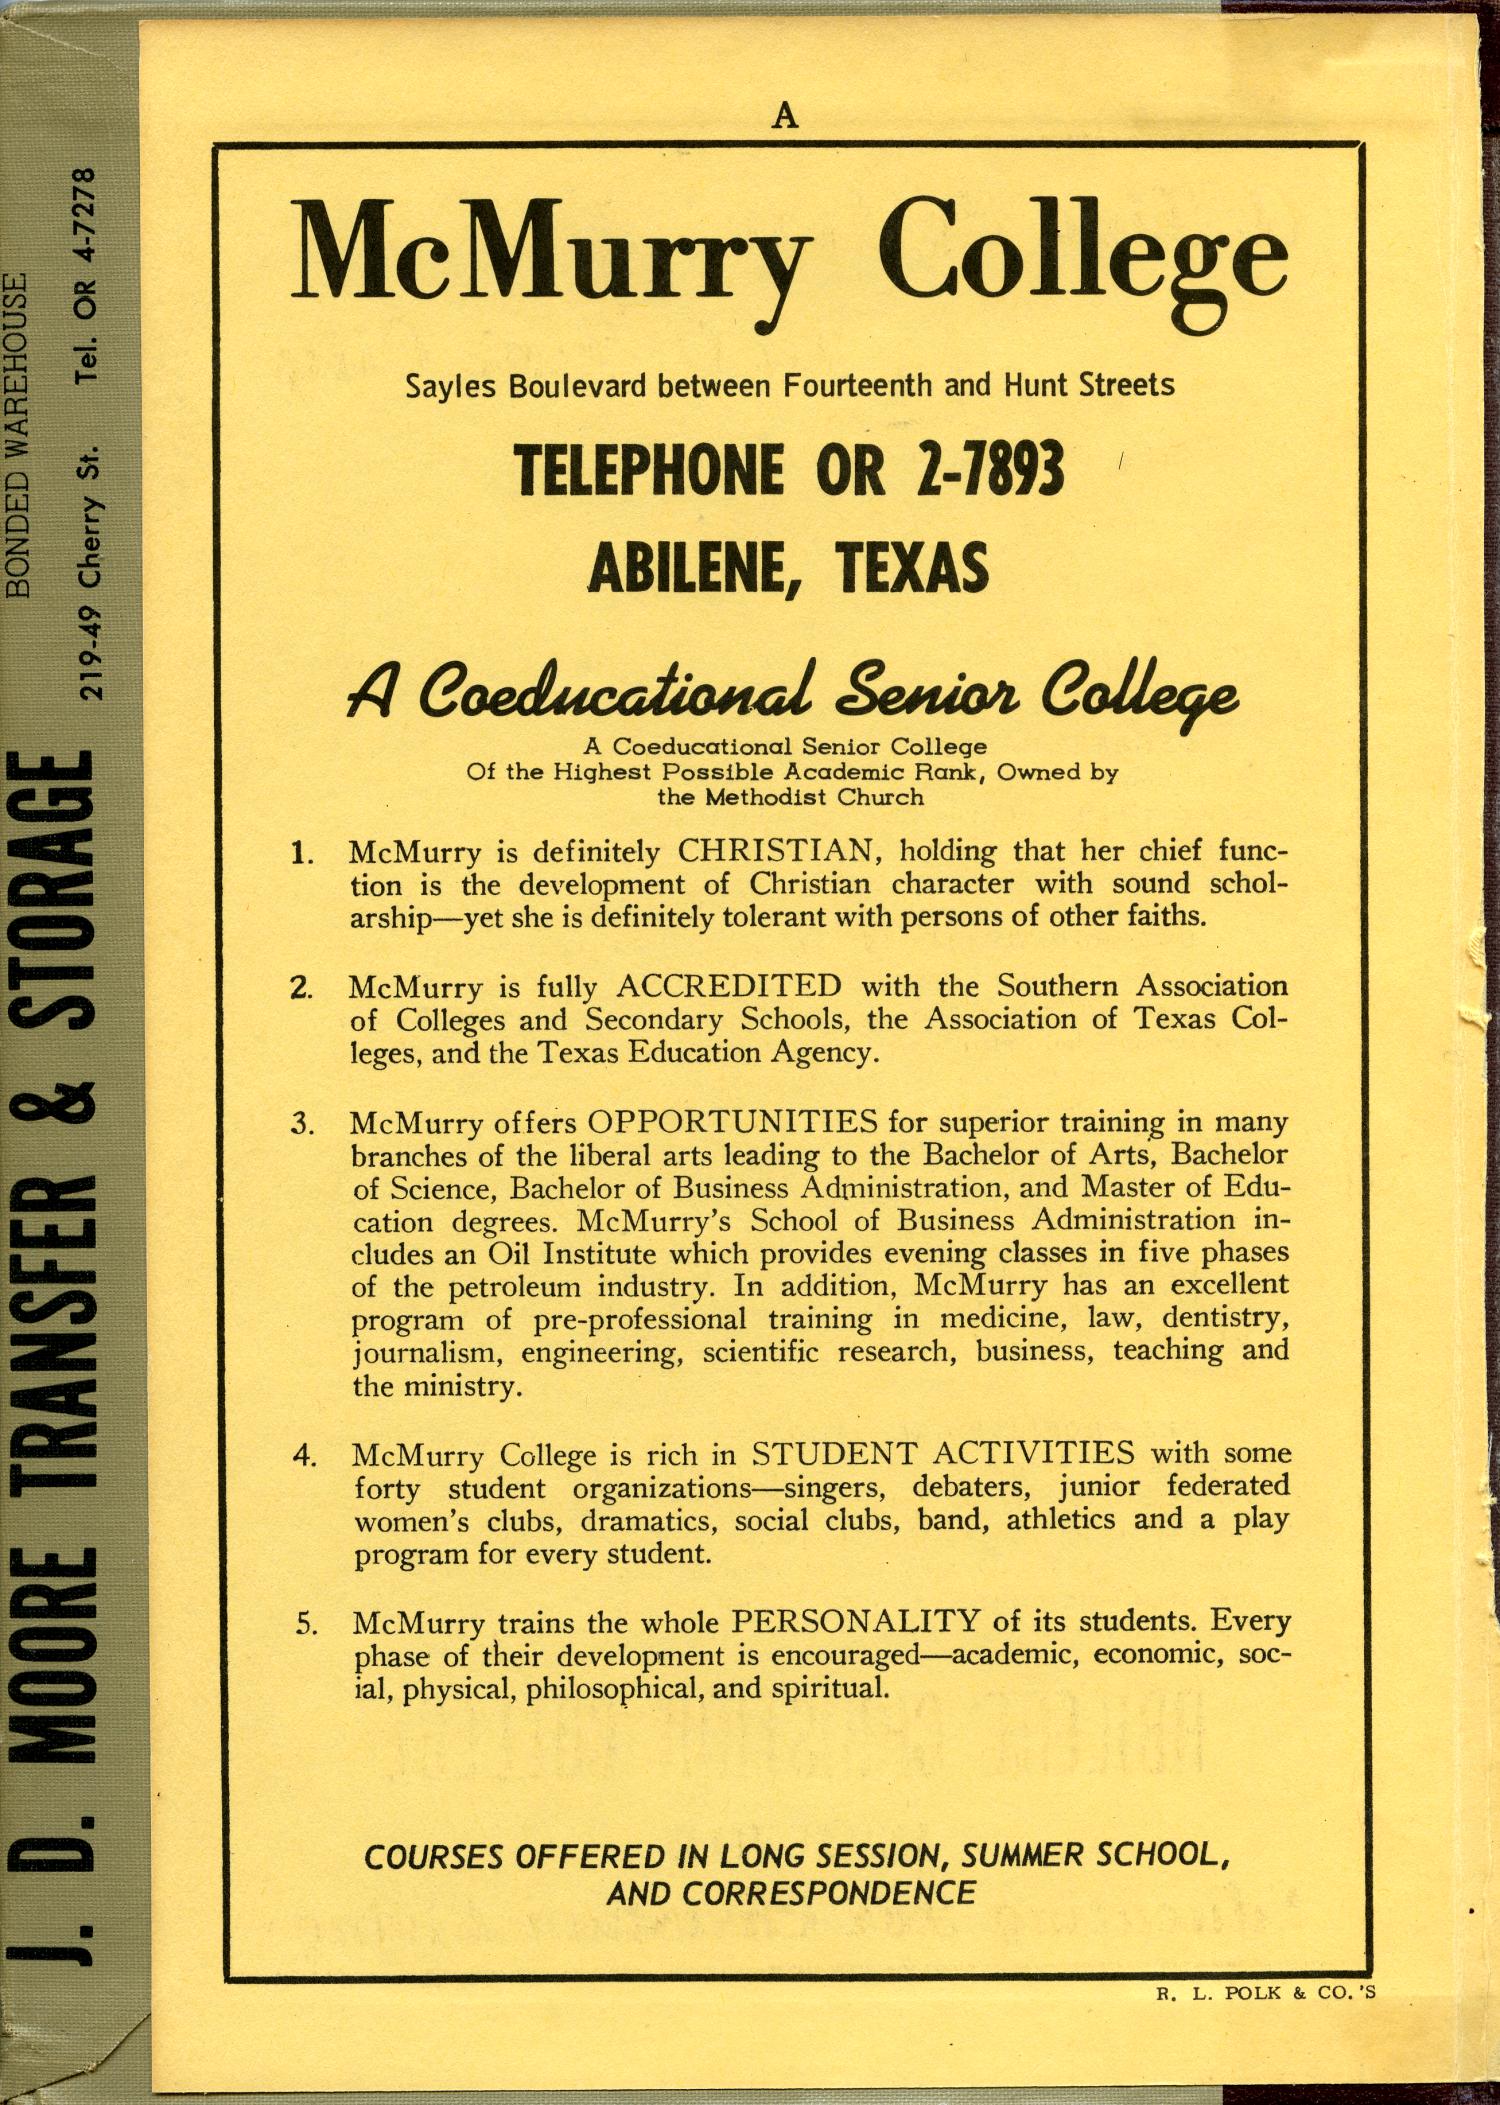 Polk's Abilene (Taylor County, Texas) City Directory, 1958
                                                
                                                    Front Inside
                                                